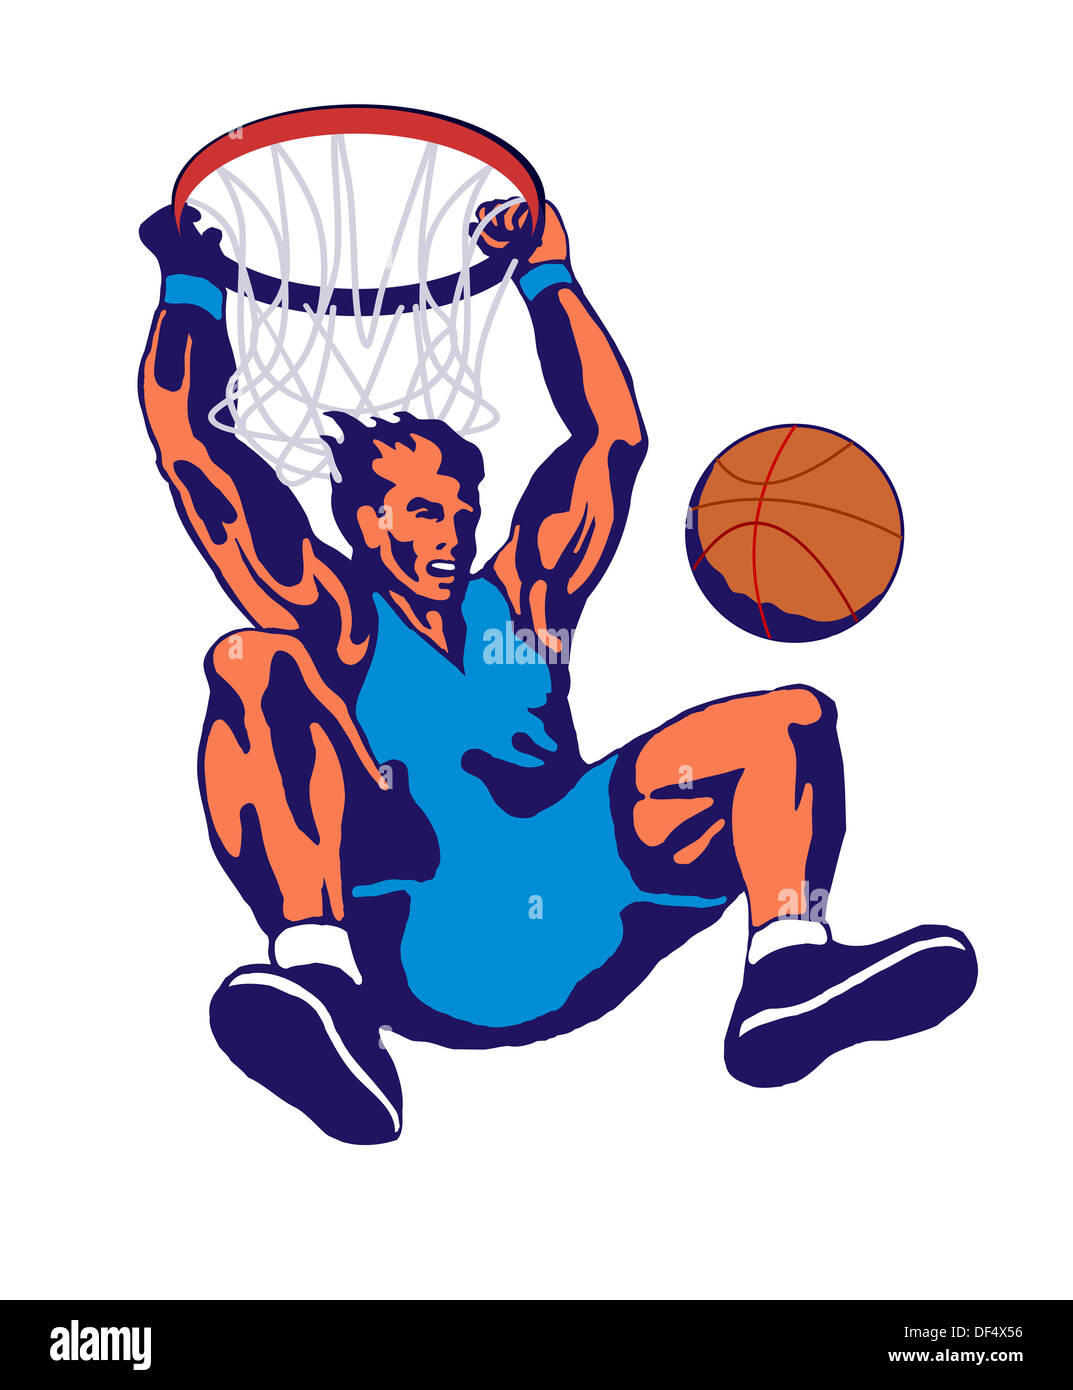 Illustrazione di un giocatore di basket ball dunking fatto in stile retrò. Foto Stock